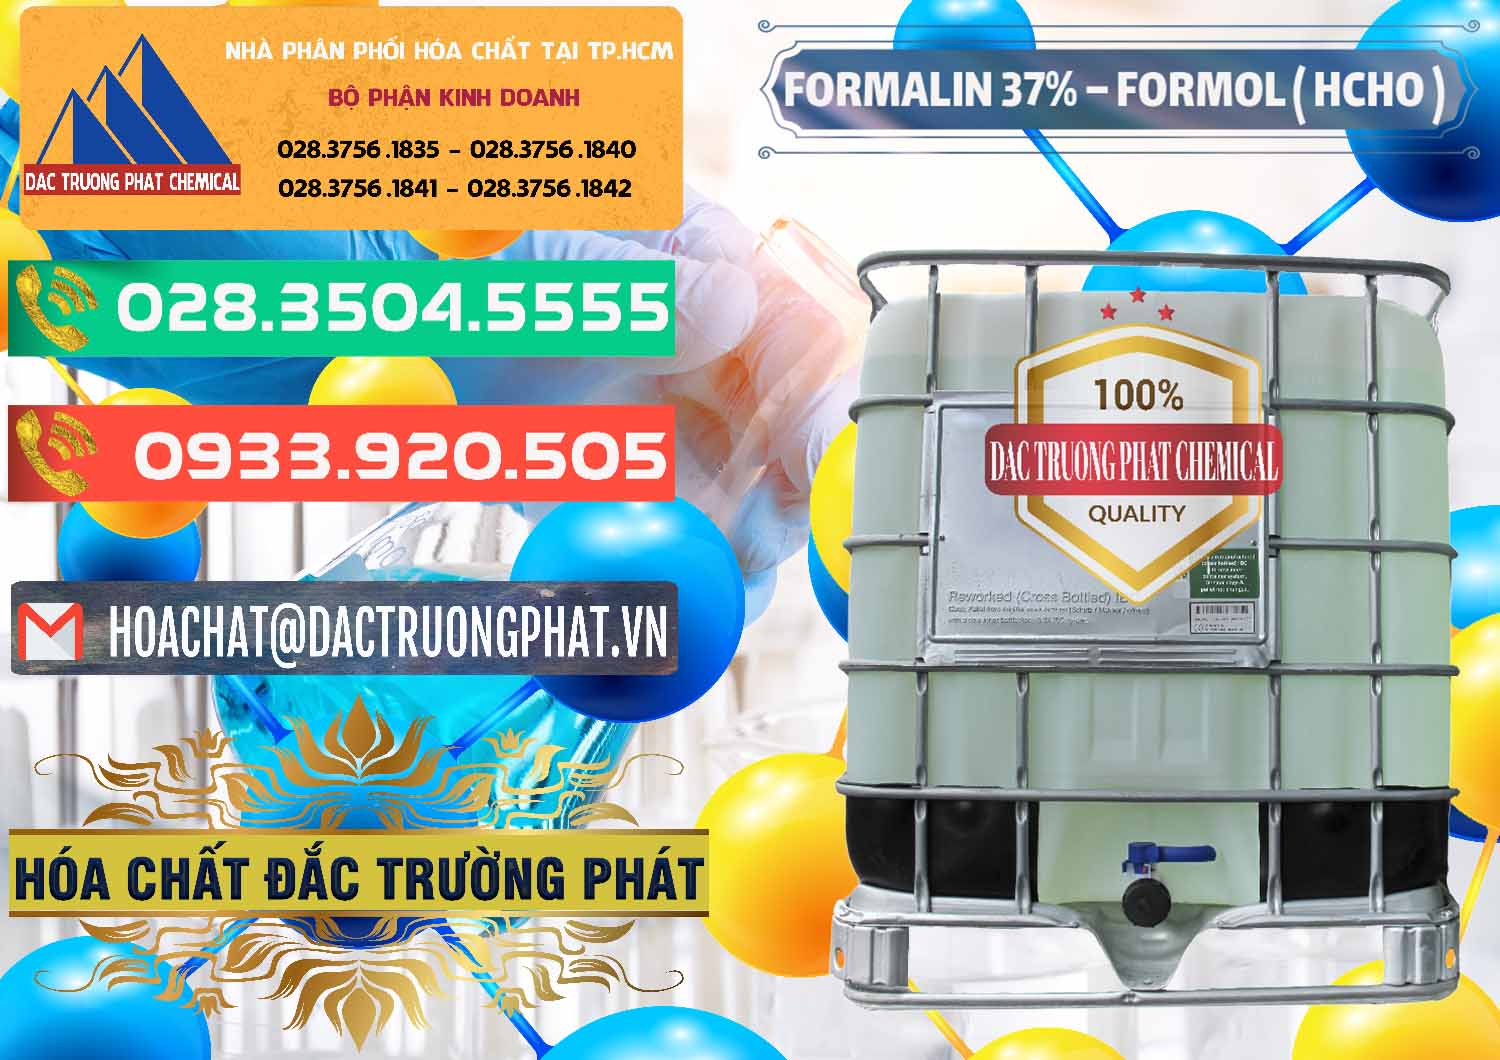 Cty kinh doanh ( cung cấp ) Formalin - Formol ( HCHO ) 37% Việt Nam - 0187 - Nhà phân phối - cung cấp hóa chất tại TP.HCM - congtyhoachat.com.vn